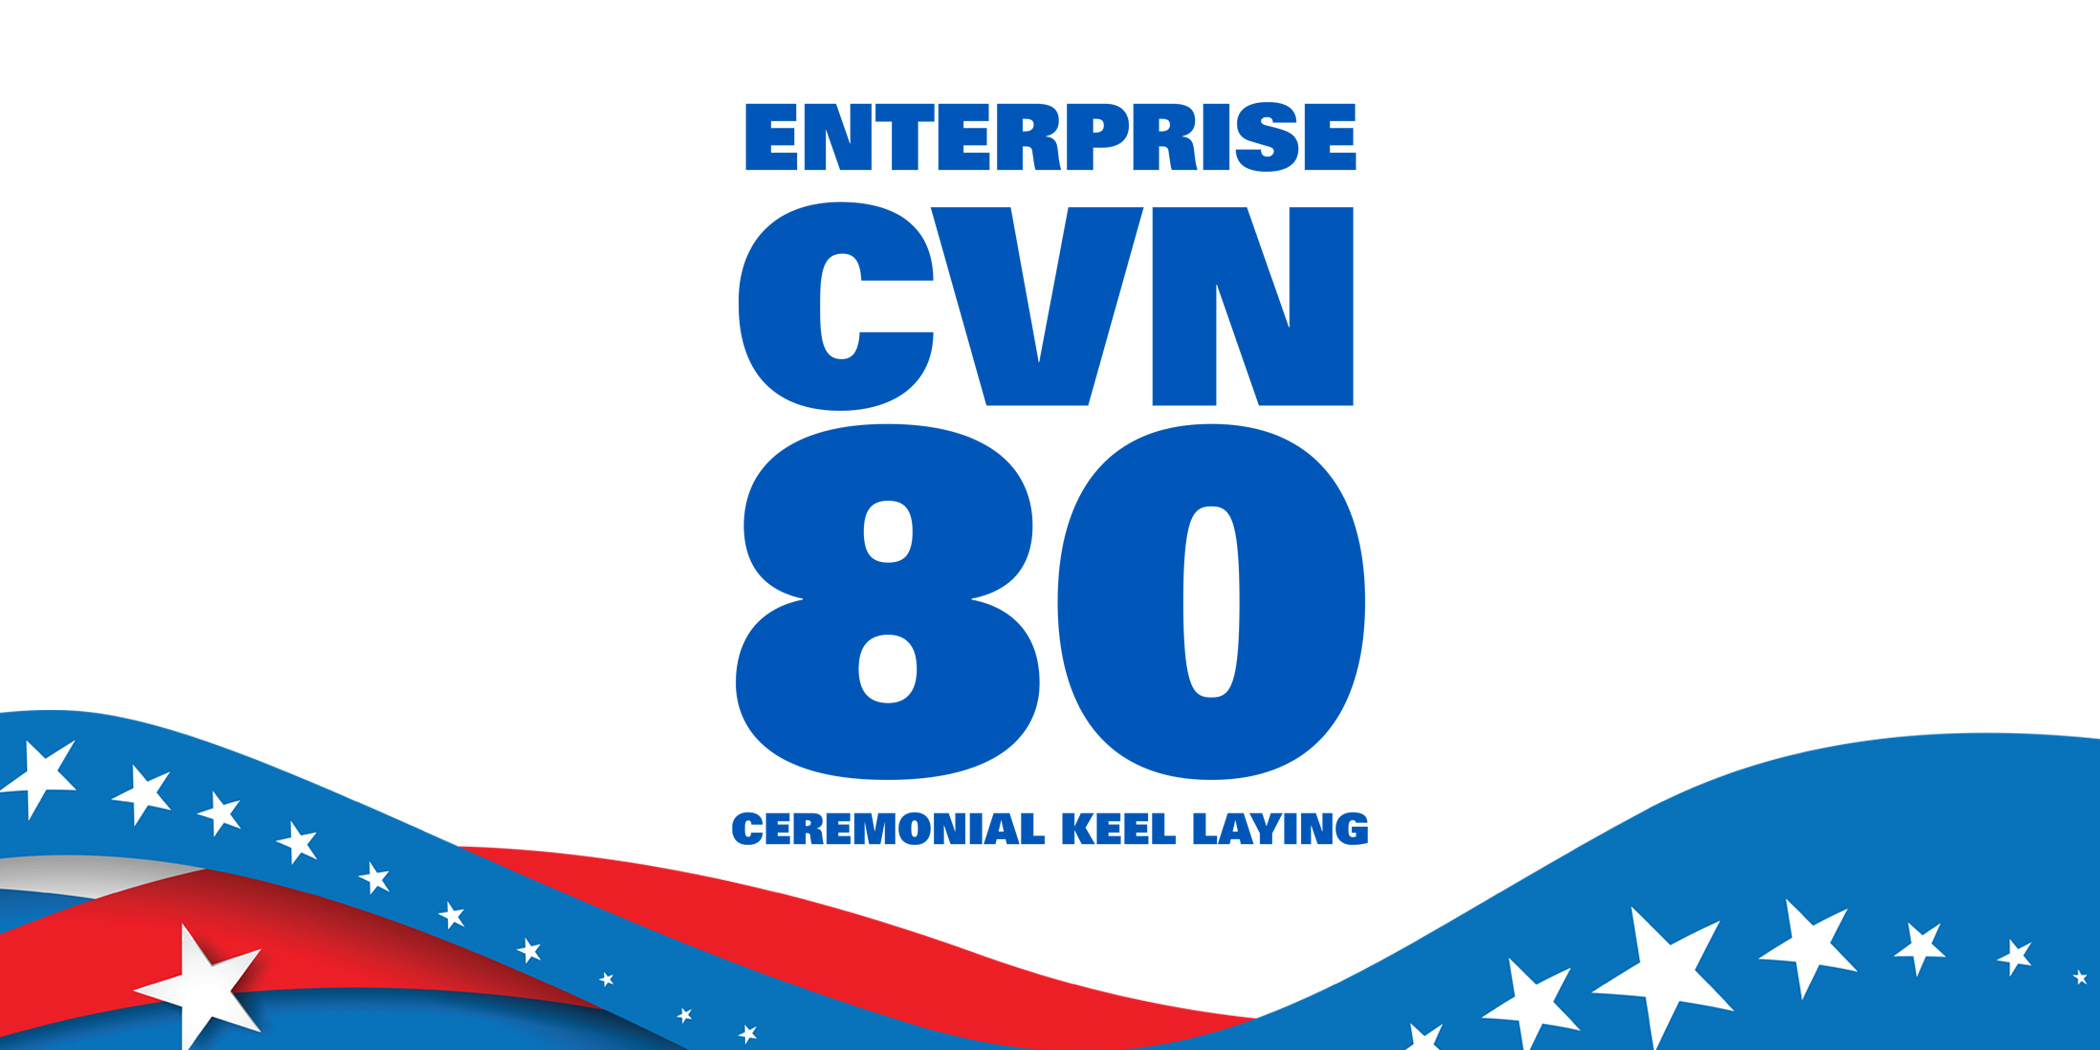 Enterprise Cvn 80 Keel Laying